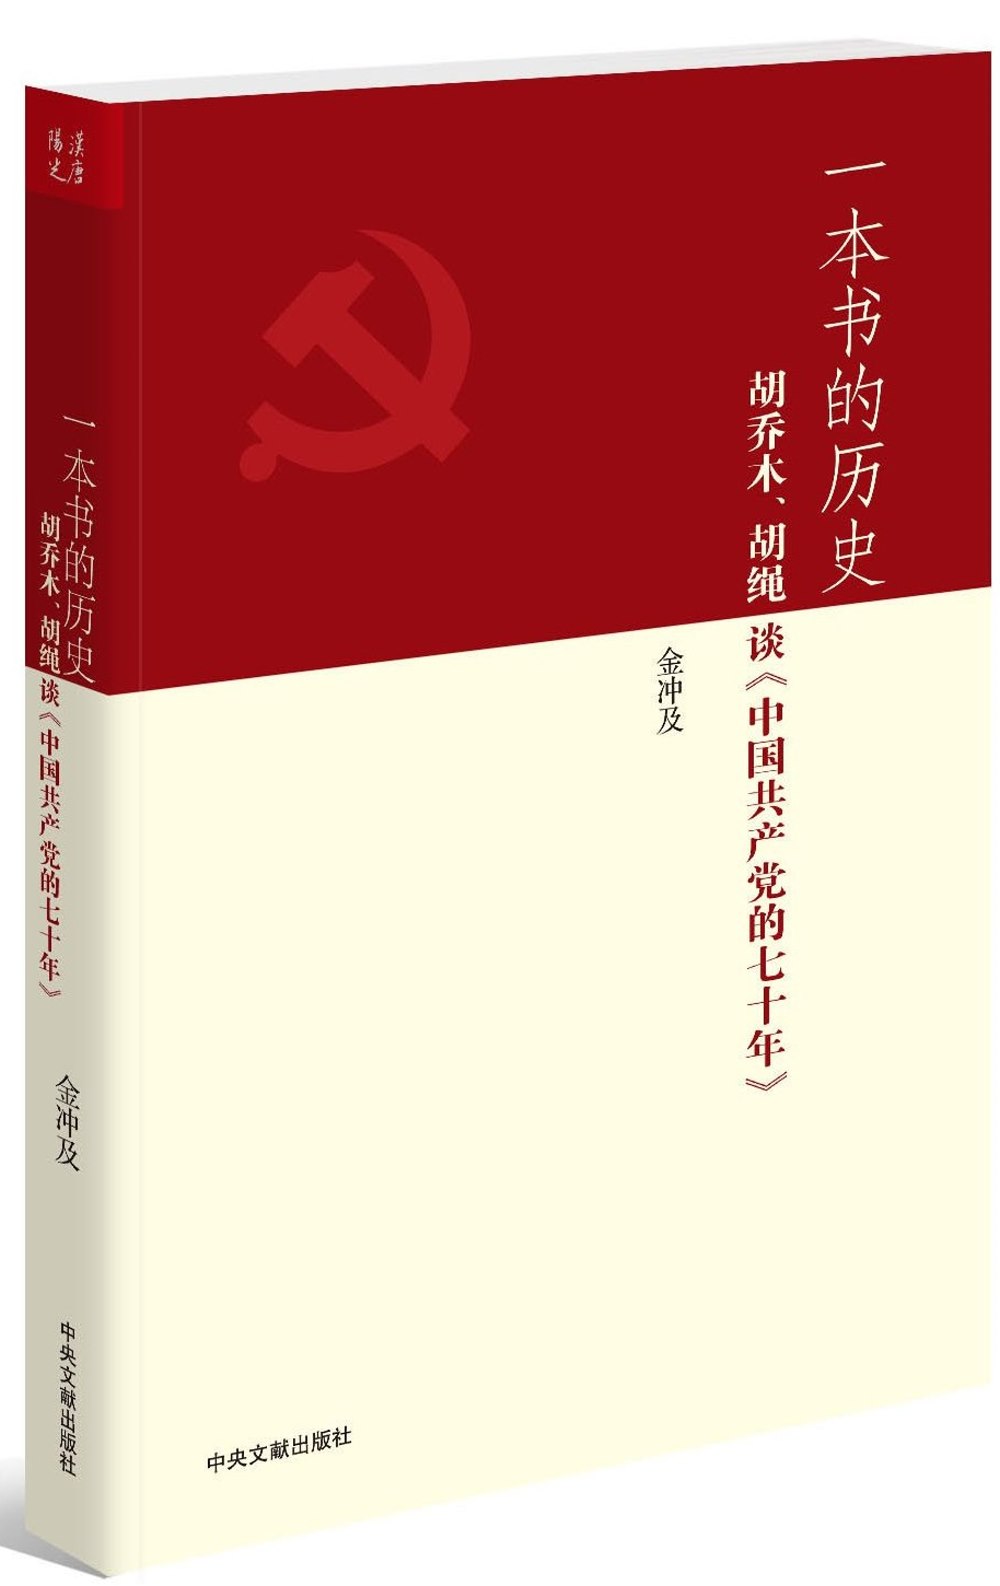 一本書的歷史：胡喬木、胡繩談《中國共產黨的七十年》